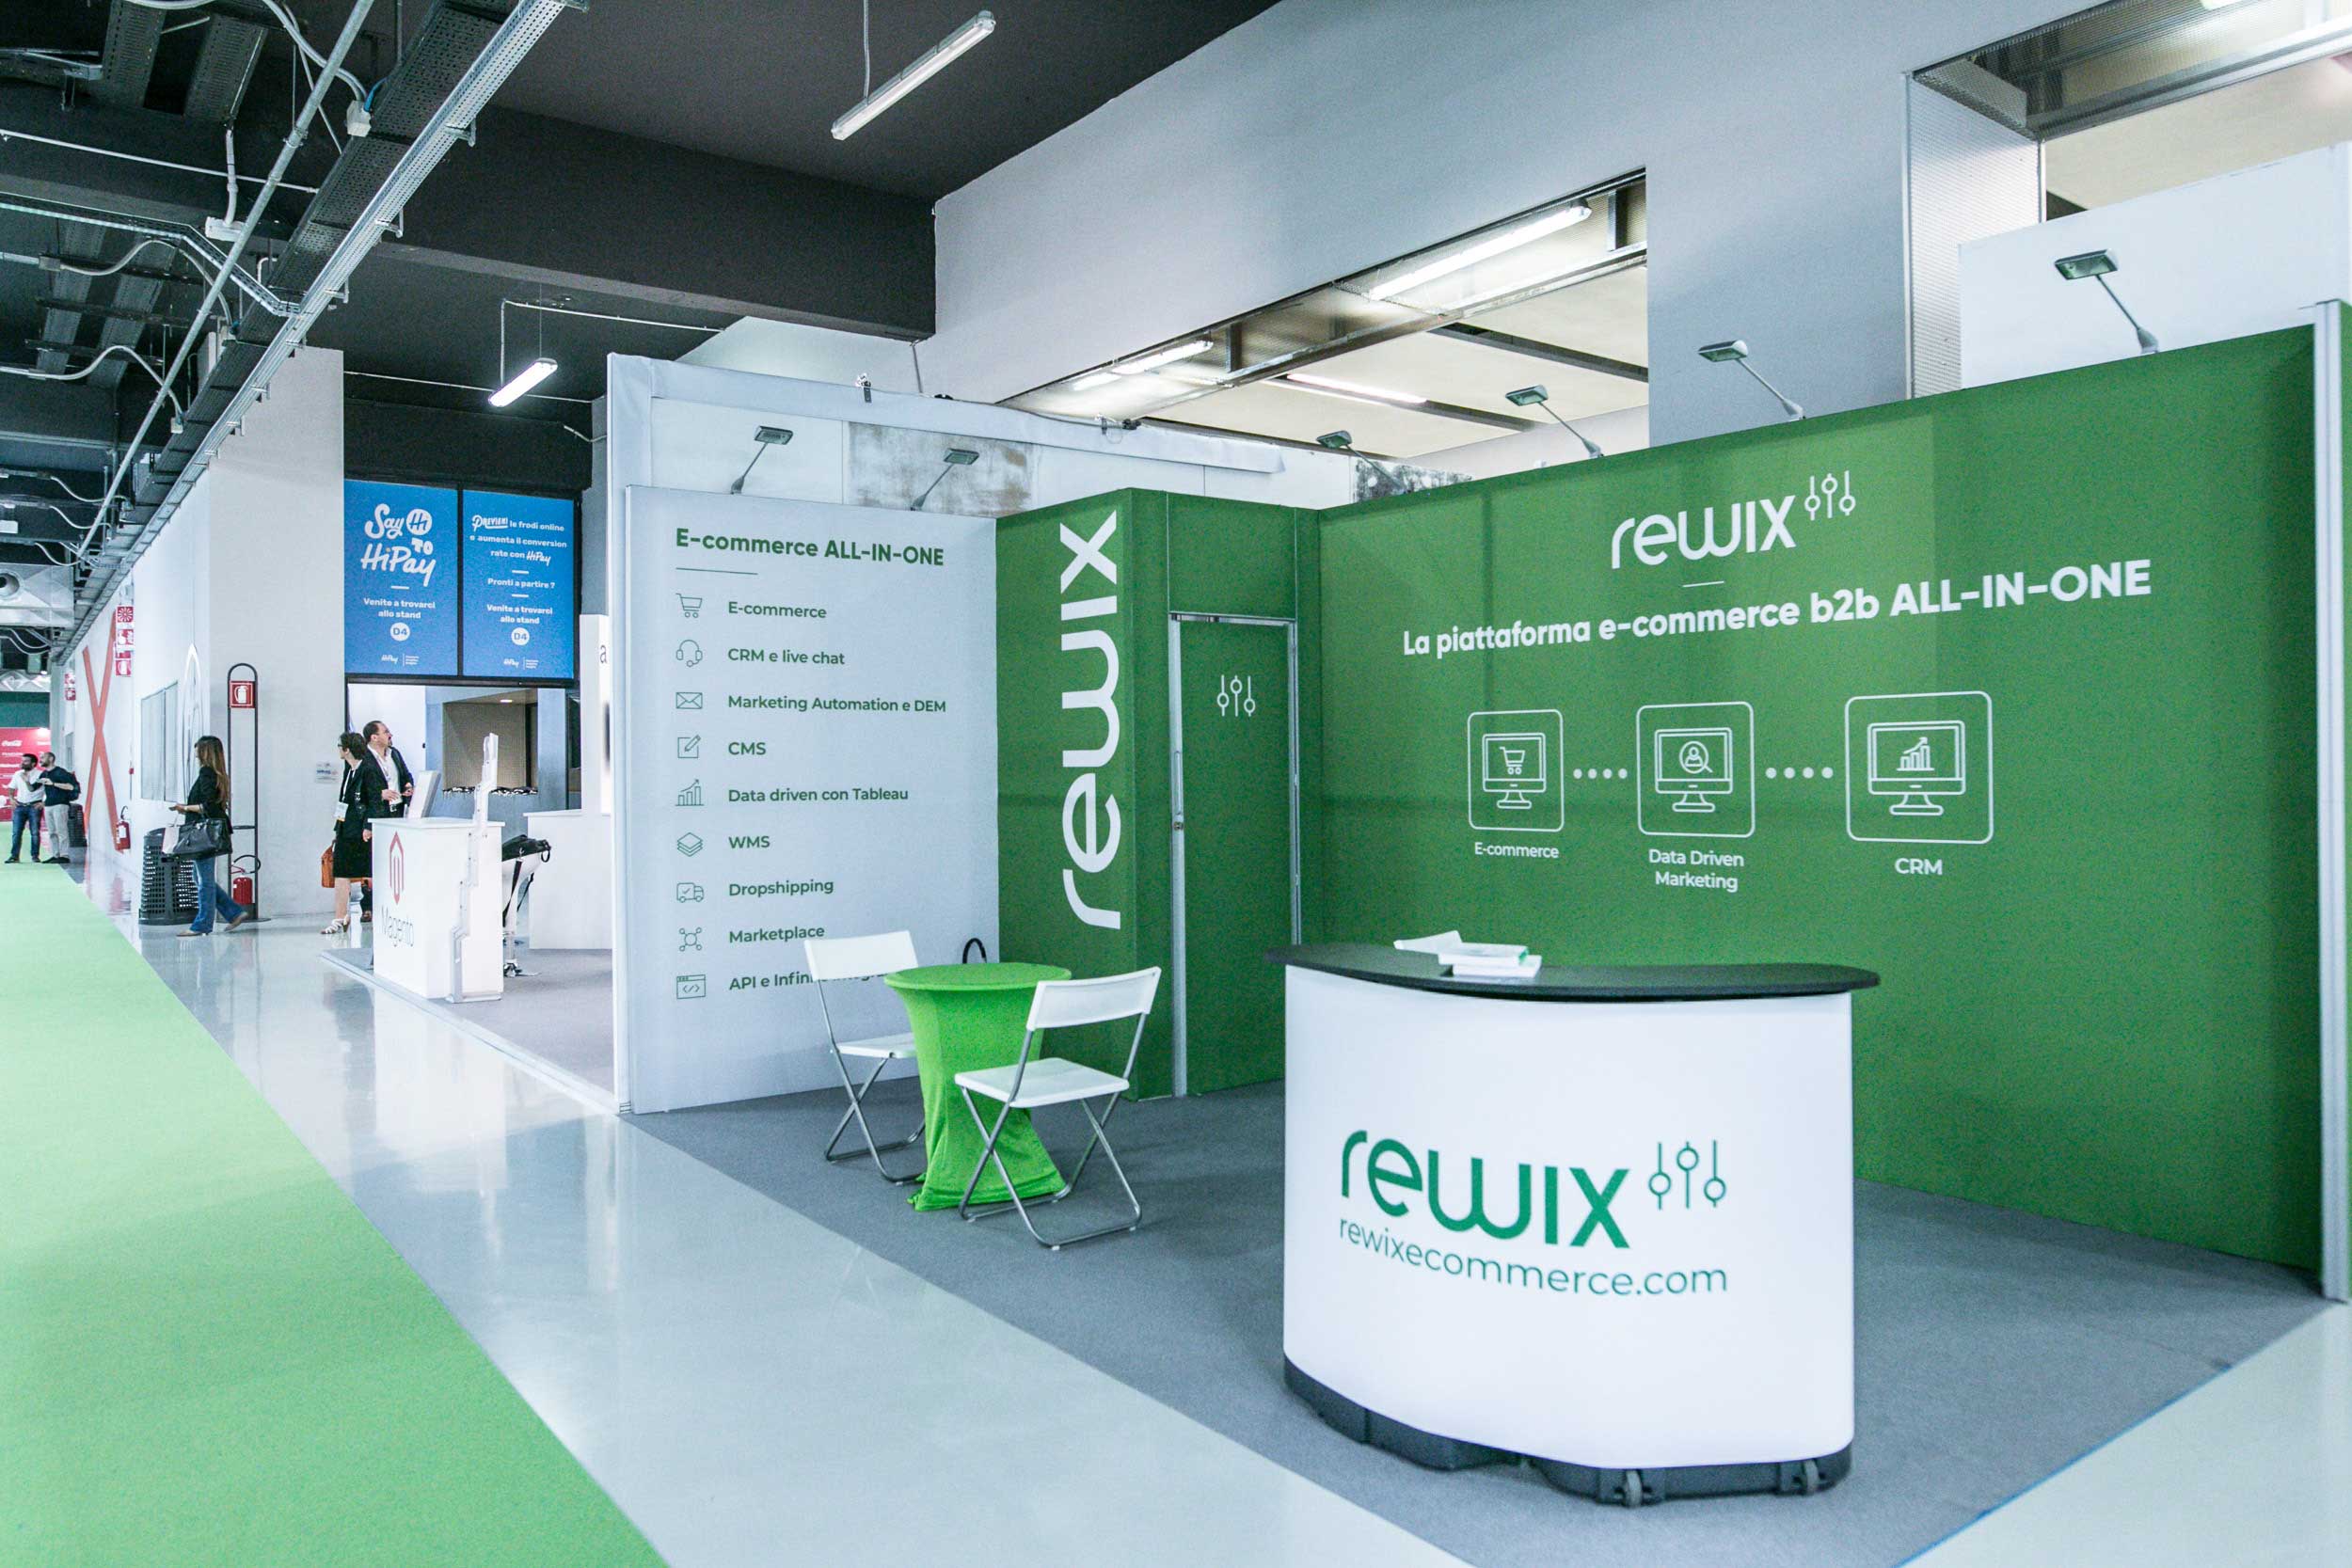 Stand Rewix e-commerce al Netcomm forum di Milano 2018